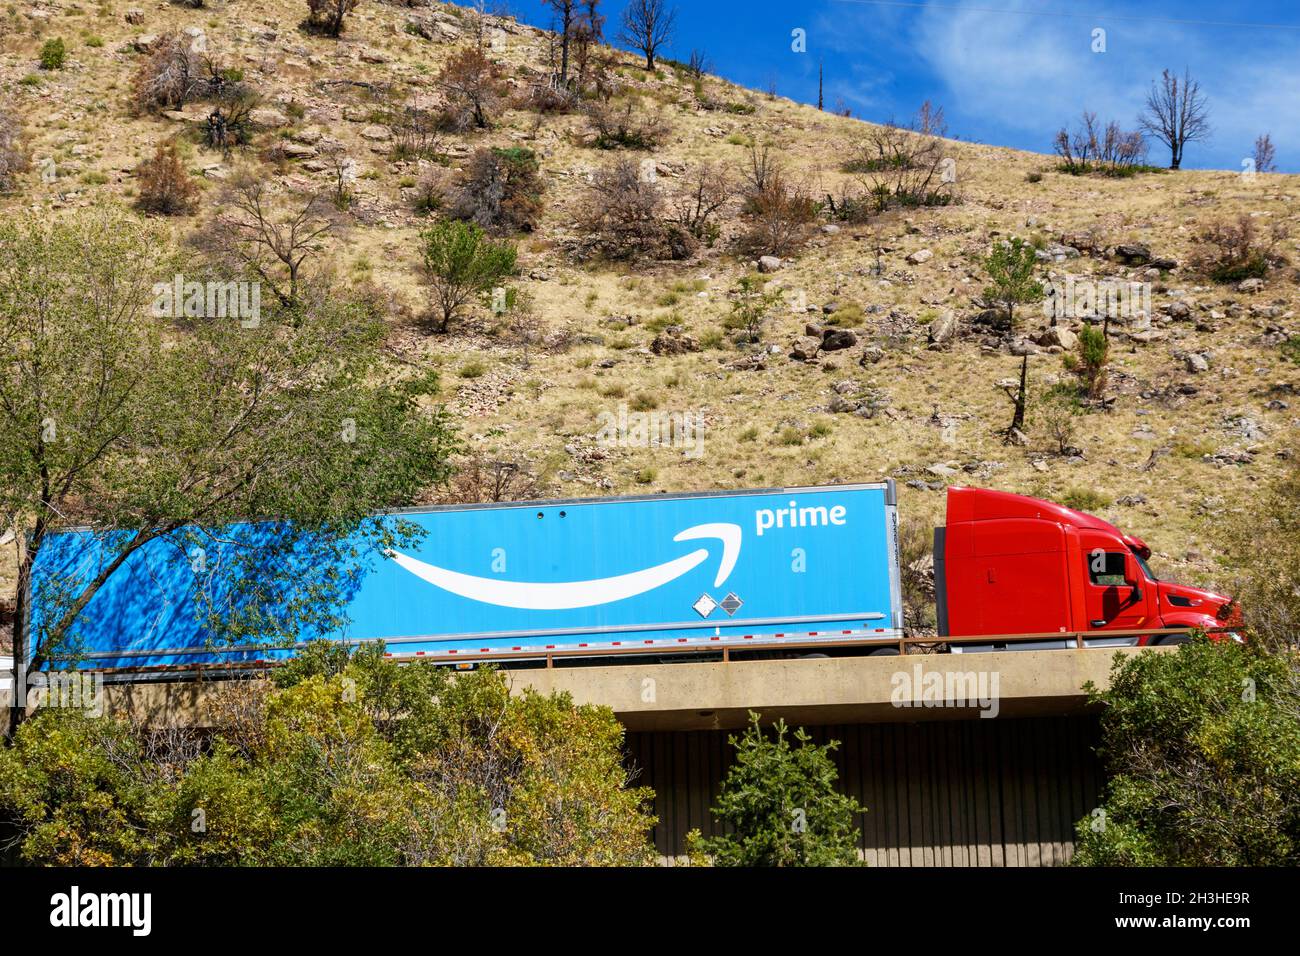 Camion semirimorchio Amazon prime consegna trasporto merci al dettaglio  attraverso il pass di montagna - Glenwood Canyon, Colorado, Stati Uniti  d'America - 2021 Foto stock - Alamy